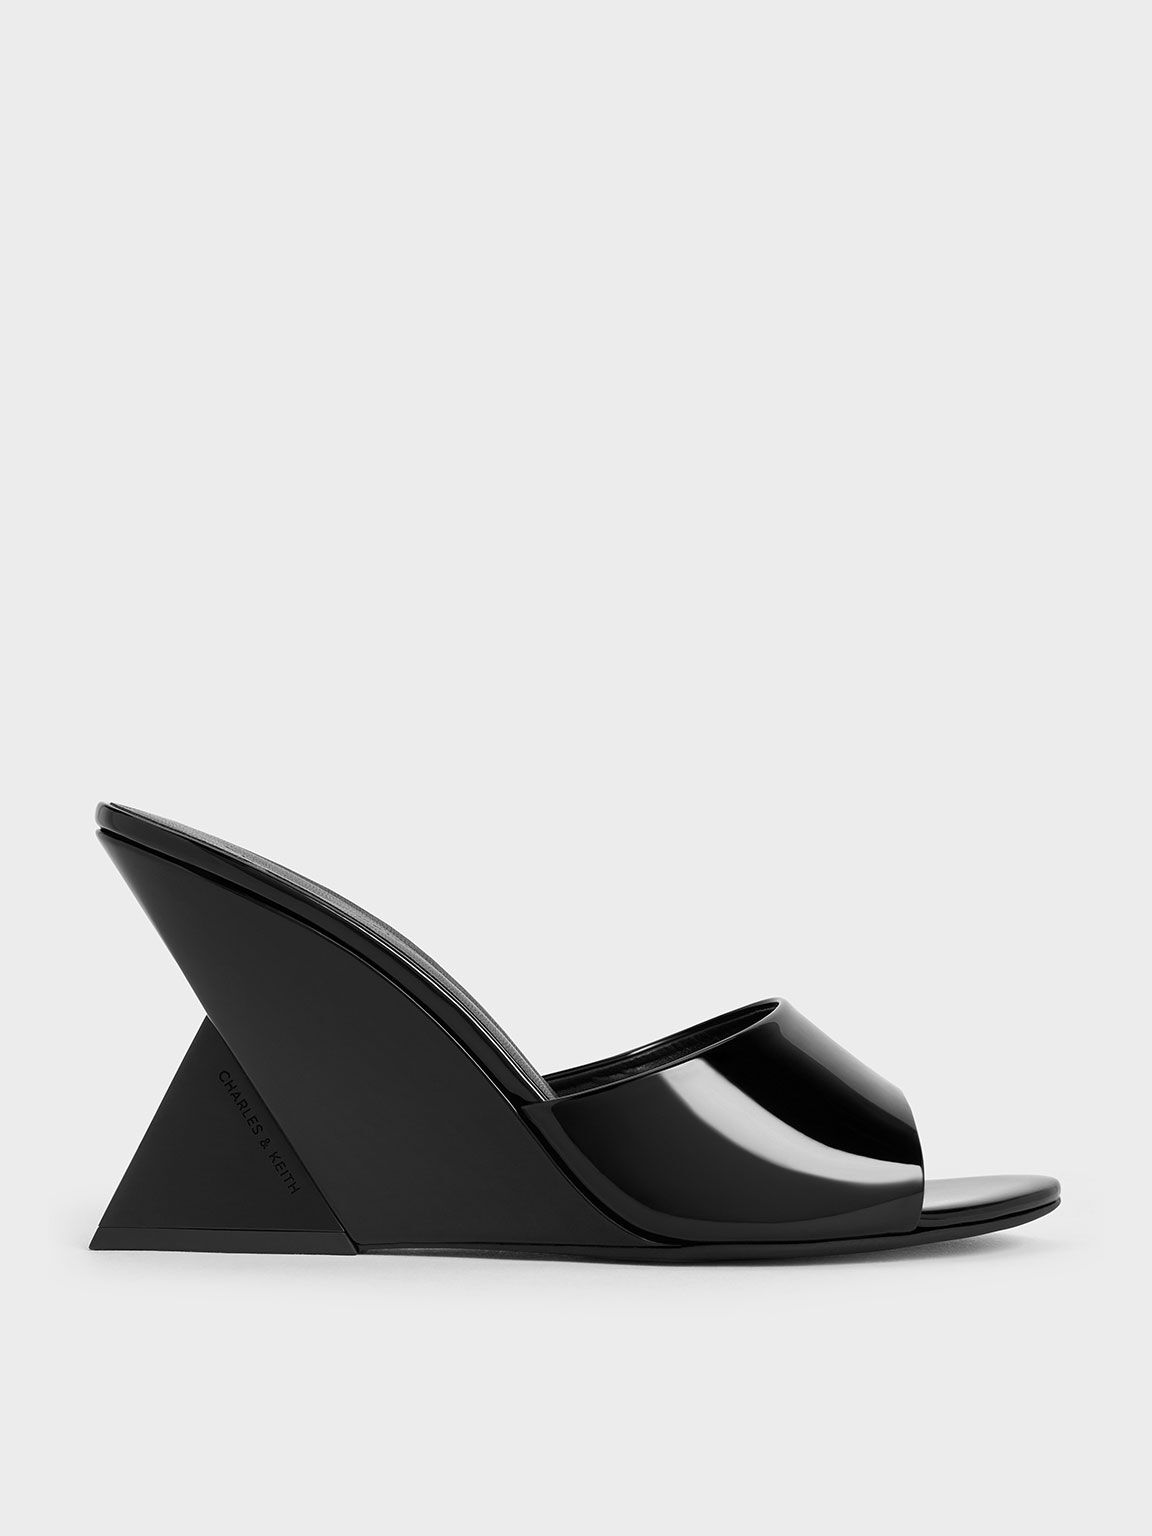 Sepatu Wedge Triangle-Heel Patent, Black Patent, hi-res